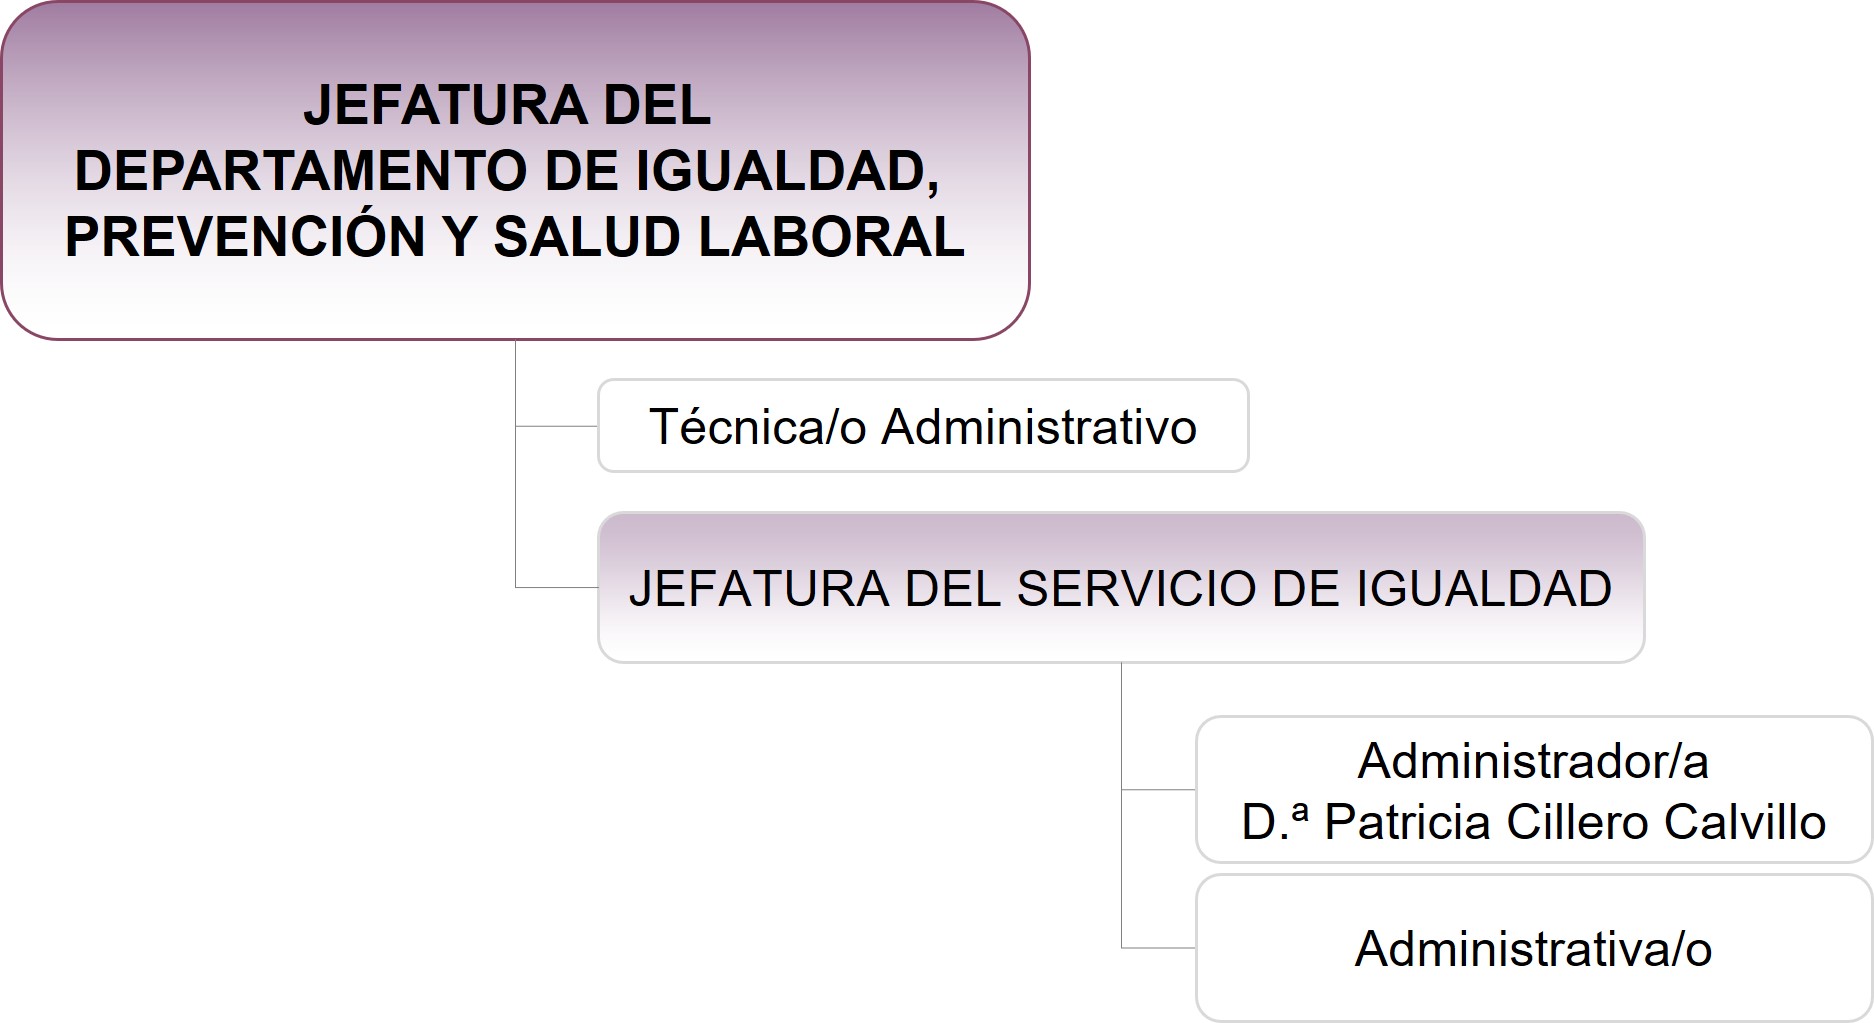 Estructura del Departamento de Igualdad, Prevención y Salud Laboral